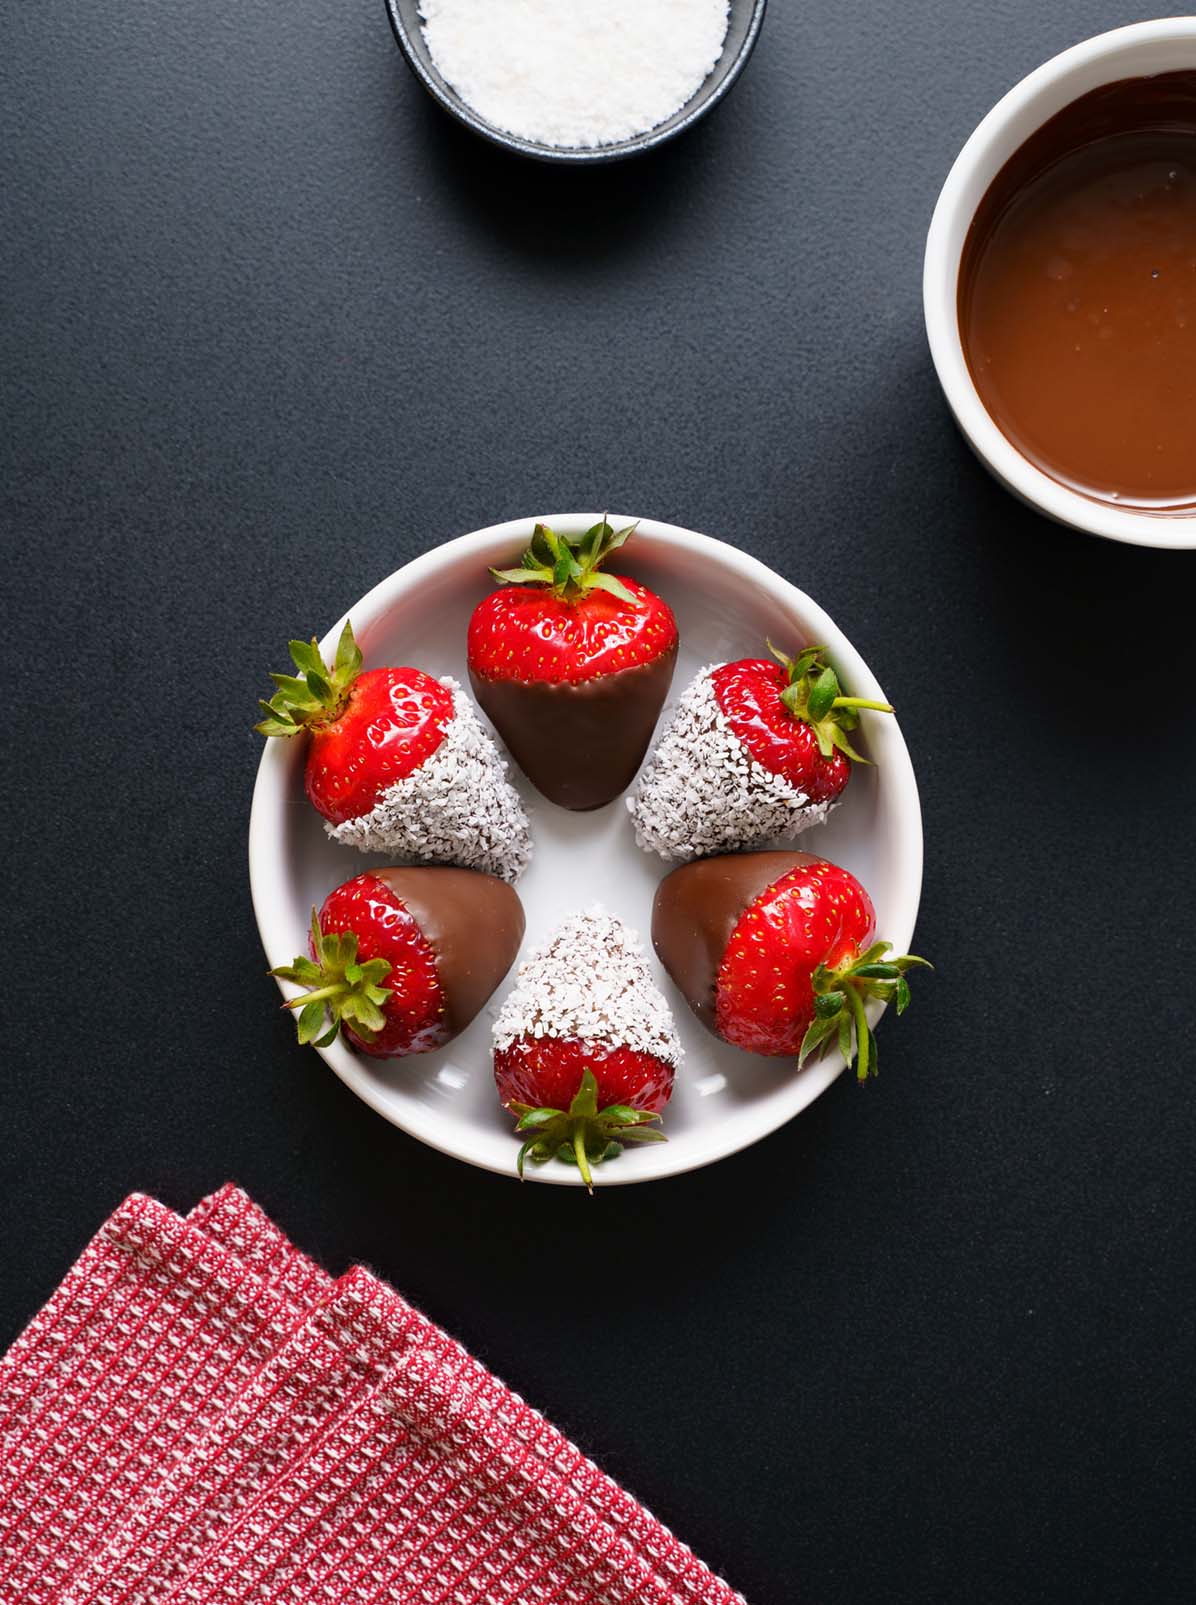 https://www.vegrecipesofindia.com/wp-content/uploads/2021/07/chocolate-covered-strawberries-2.jpg